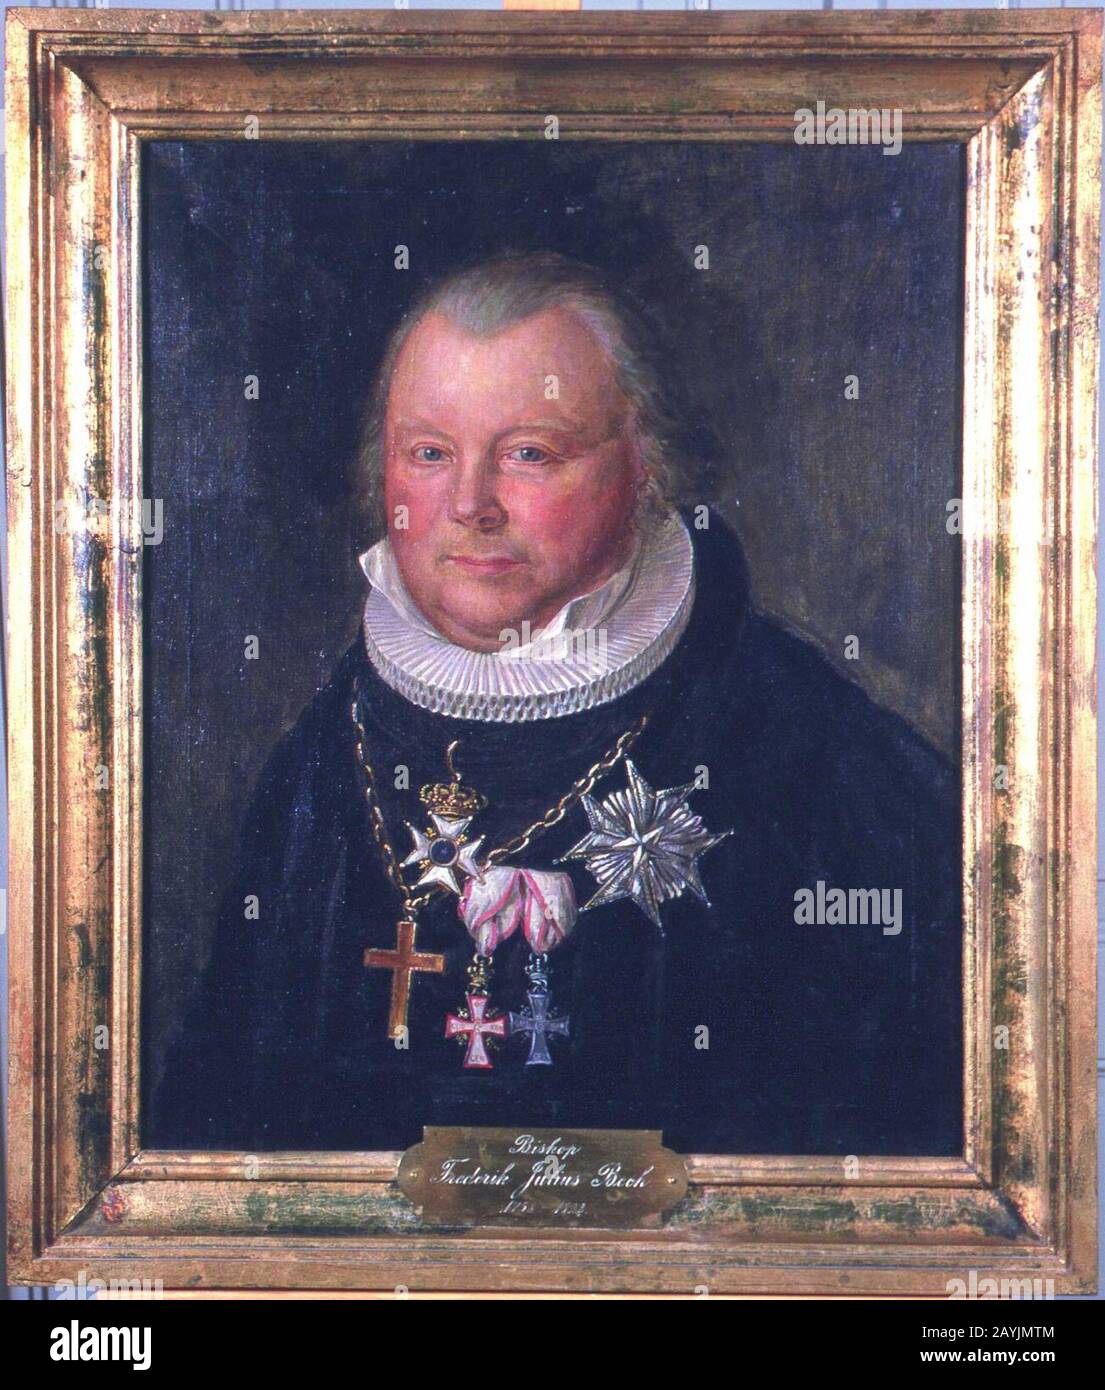 Frederik Julius Bech av August Eiebakke, Eidsvoll 1814, EM.00682. Stock Photo